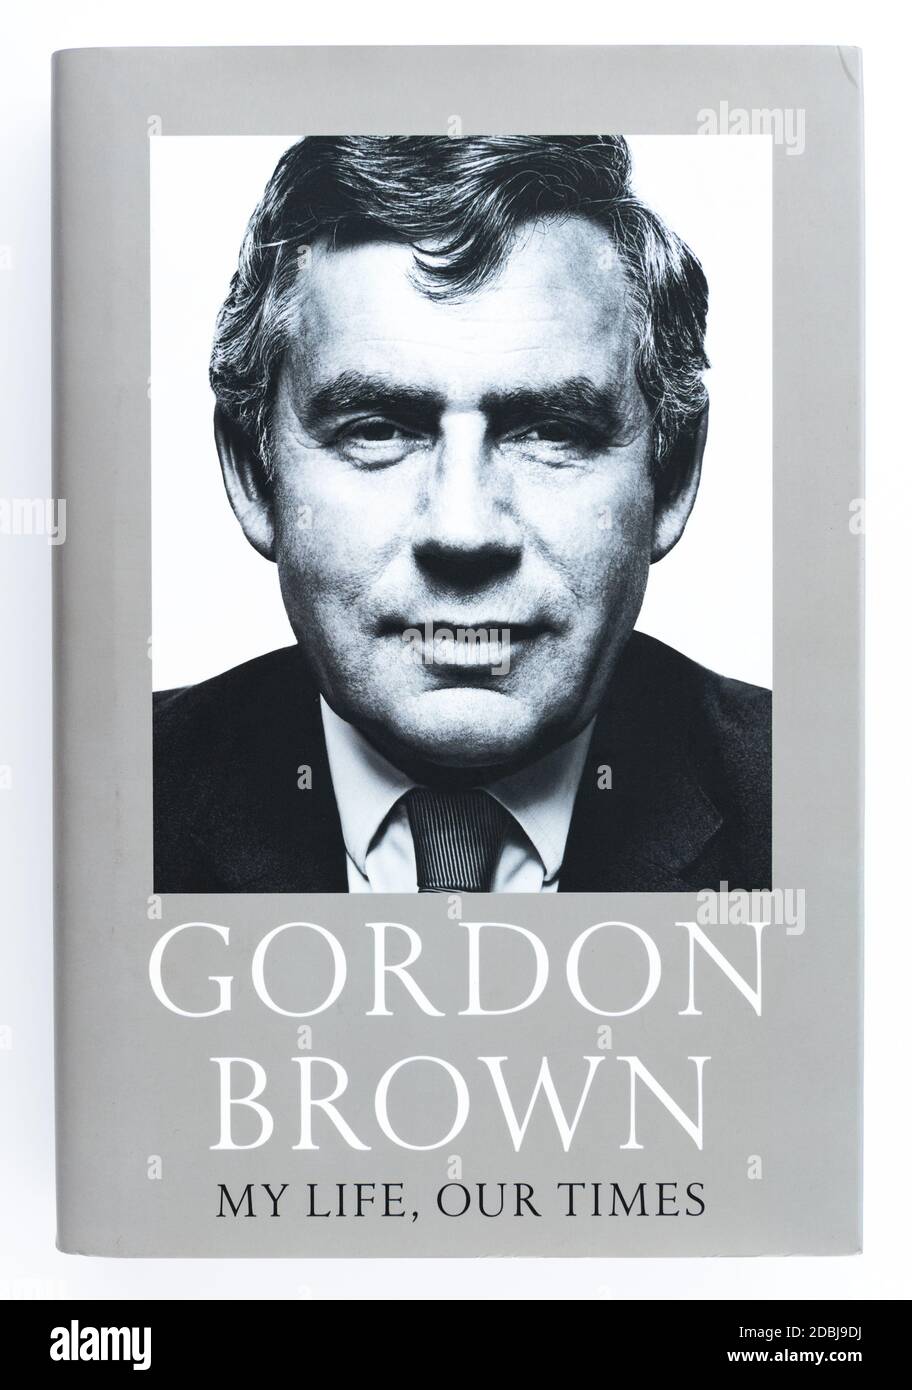 Gordon Brown - Ma vie, notre livre de temps Banque D'Images